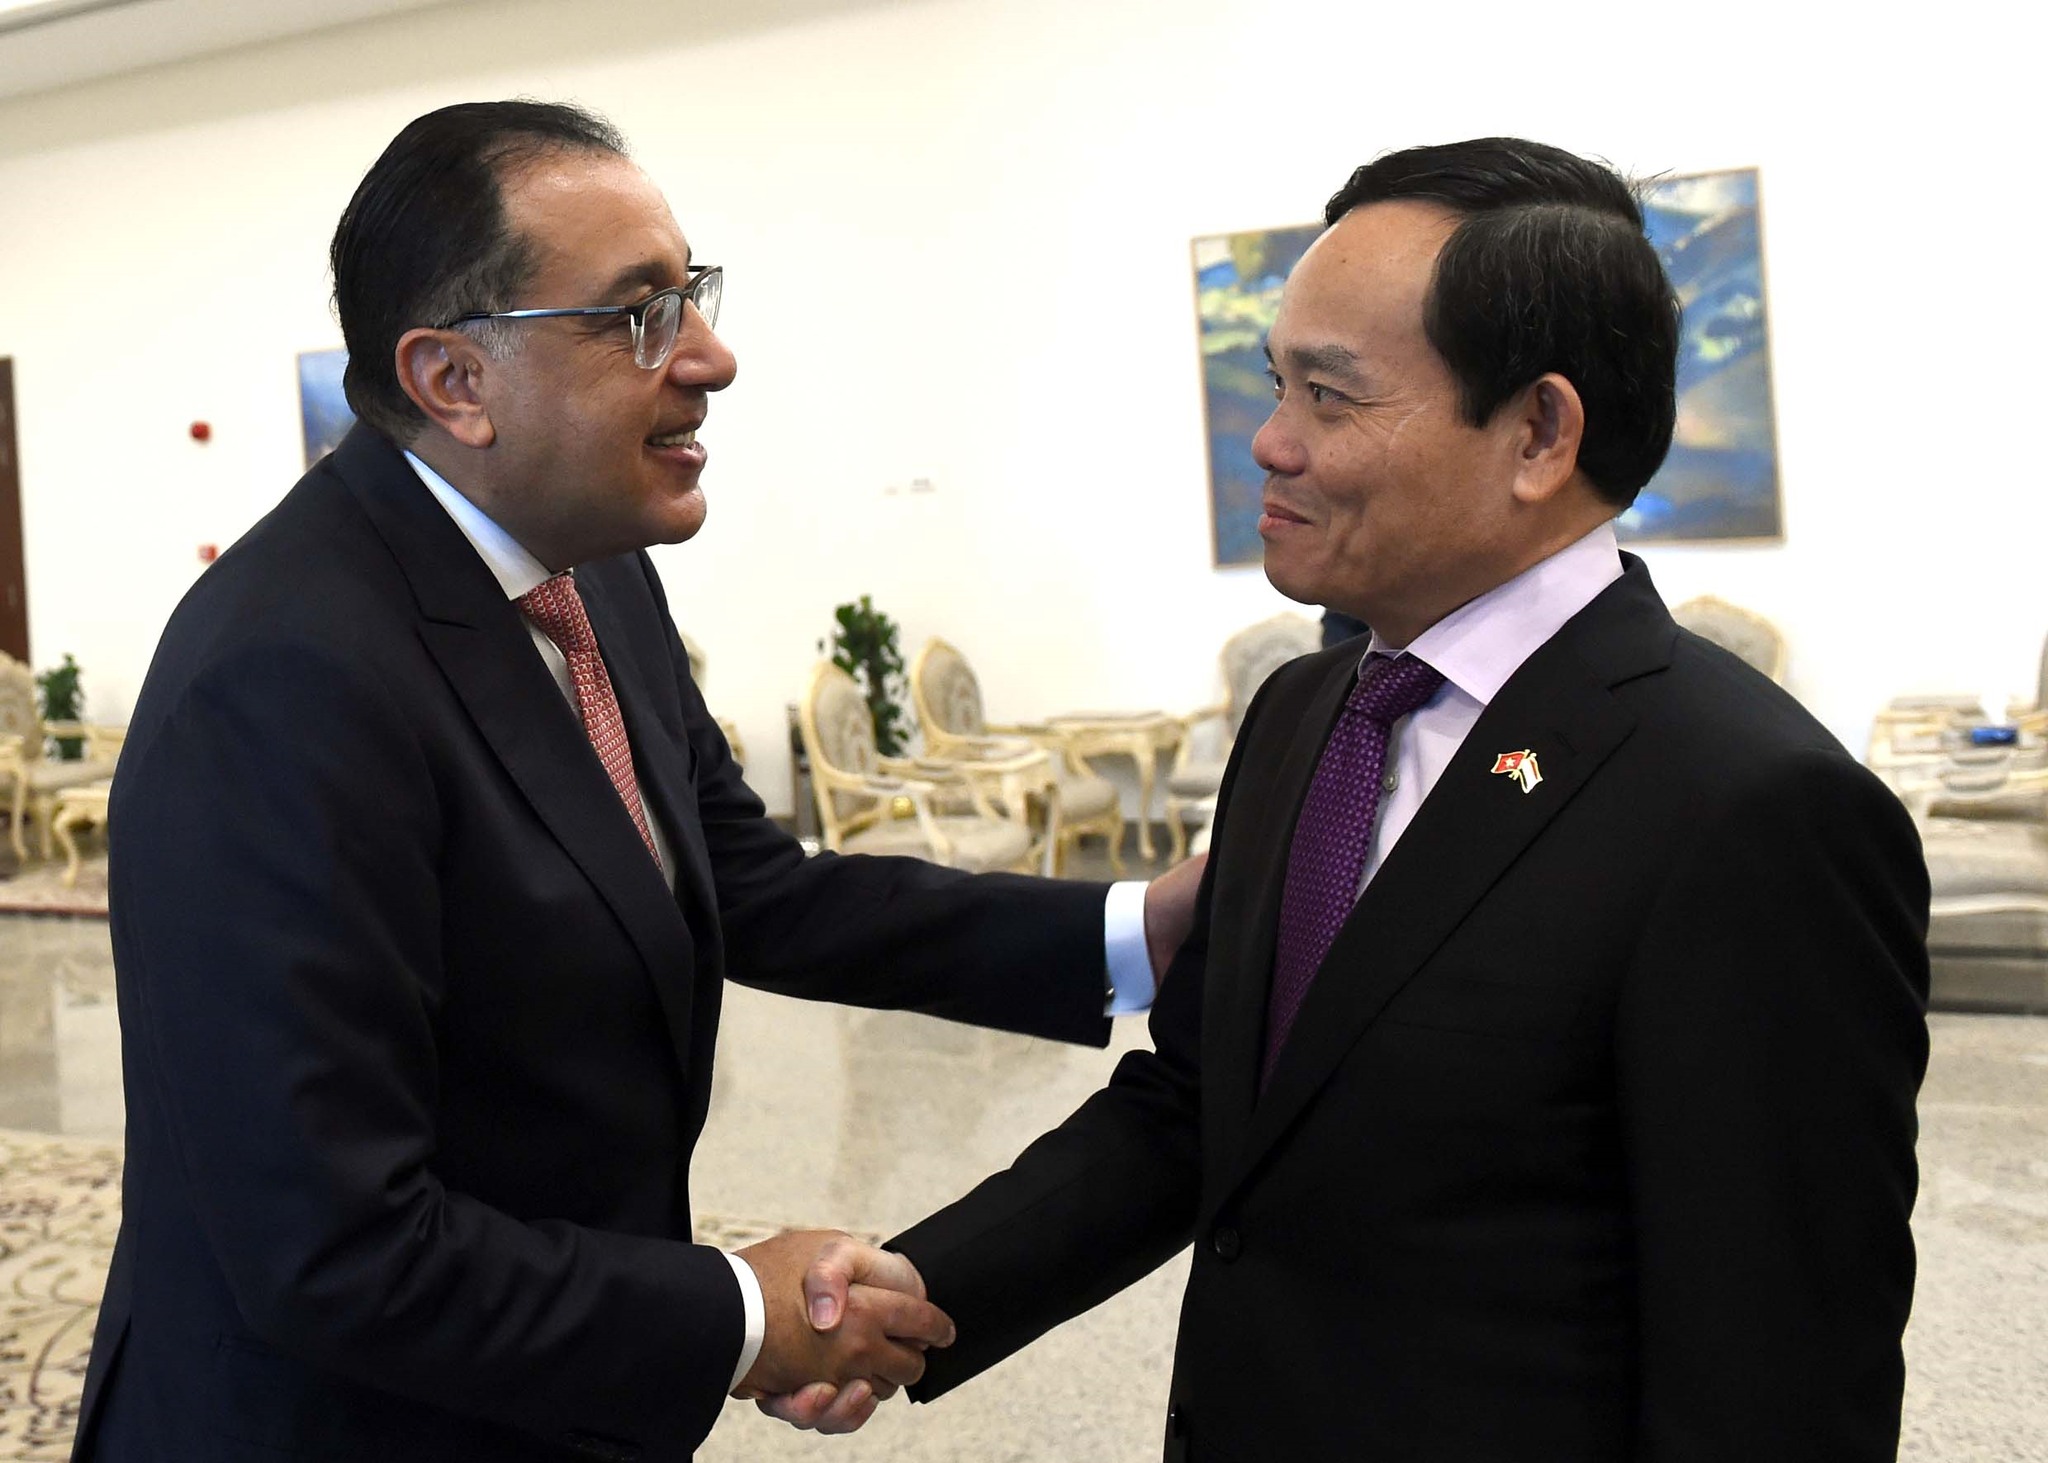 مصر تبدأ مناقشات أولية بشأن مقترح توقيع اتفاقية تجارة حرة مع فيتنام